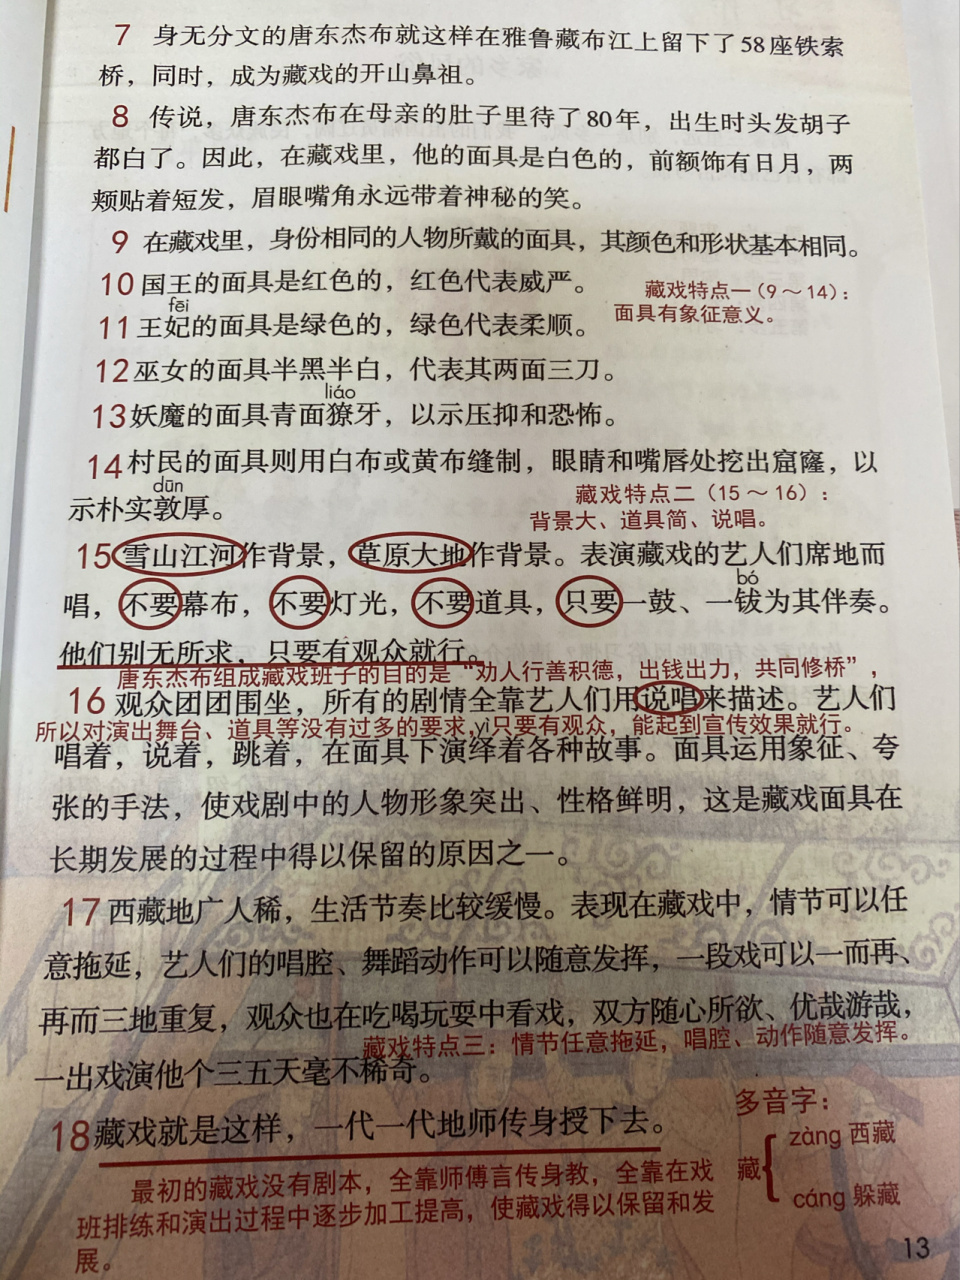 「课堂笔记」六下语文4《藏戏》 中国的民族戏曲历史悠久,种类繁多